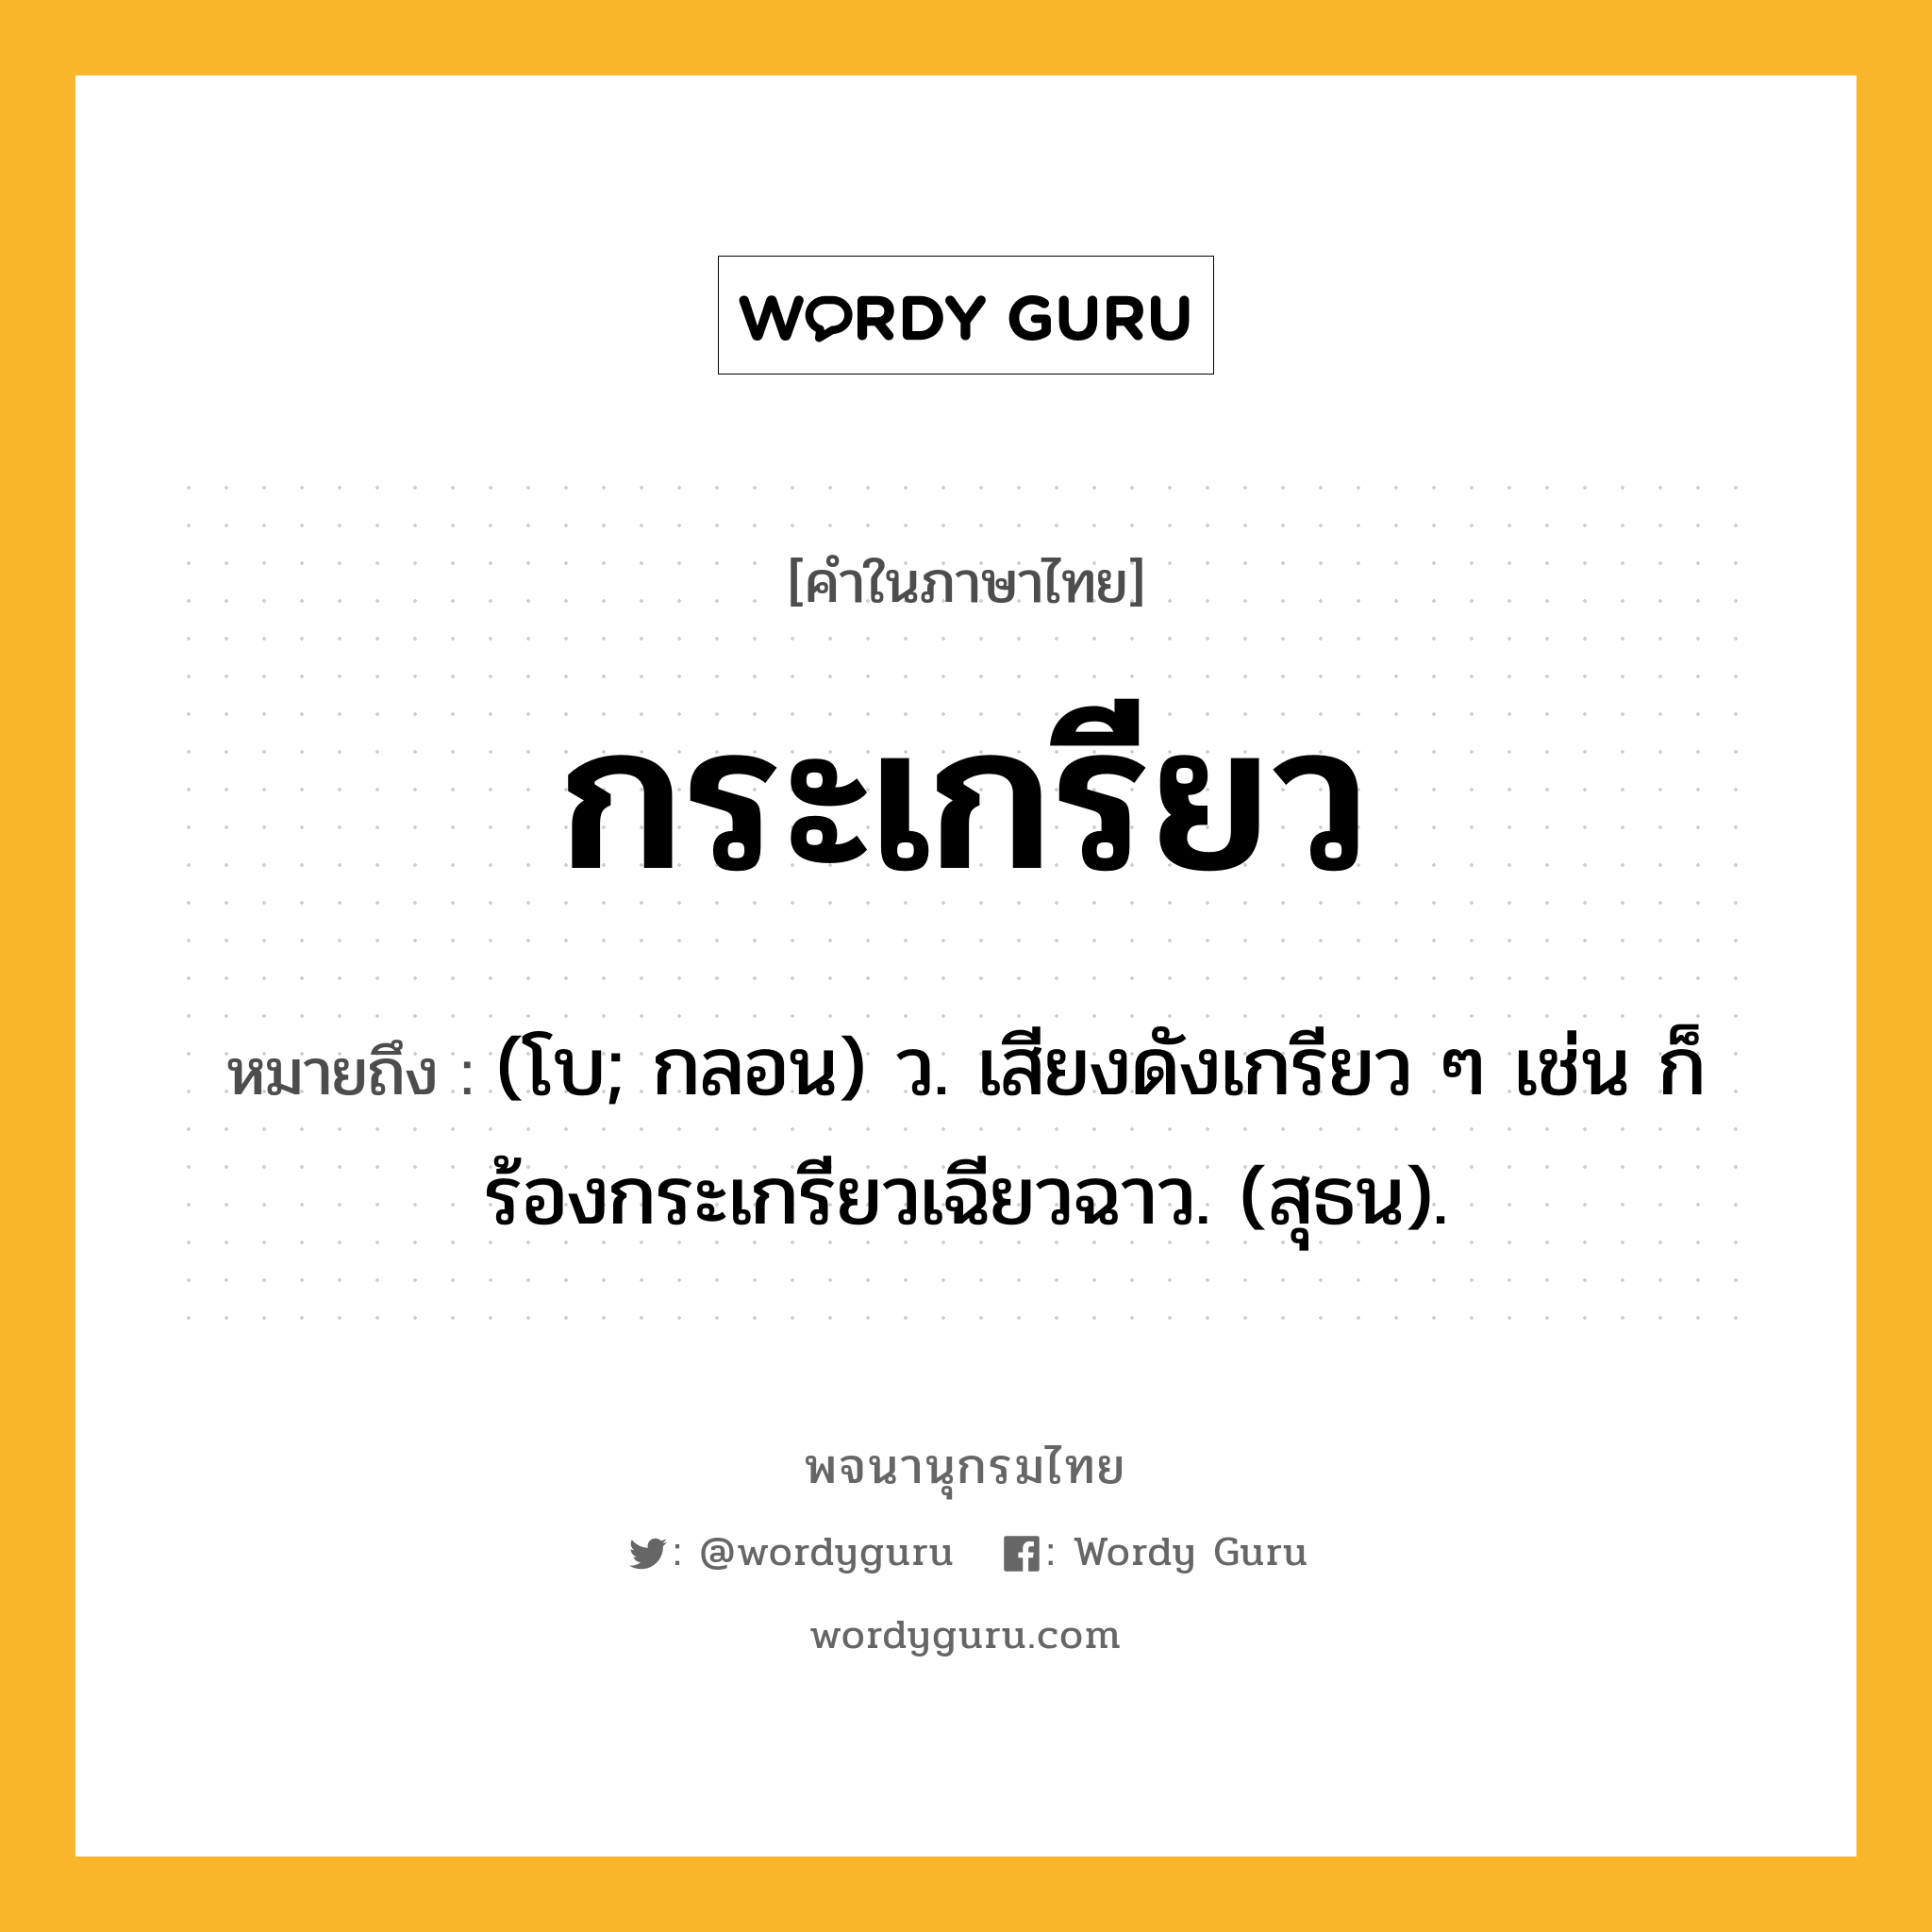 กระเกรียว หมายถึงอะไร?, คำในภาษาไทย กระเกรียว หมายถึง (โบ; กลอน) ว. เสียงดังเกรียว ๆ เช่น ก็ร้องกระเกรียวเฉียวฉาว. (สุธน).